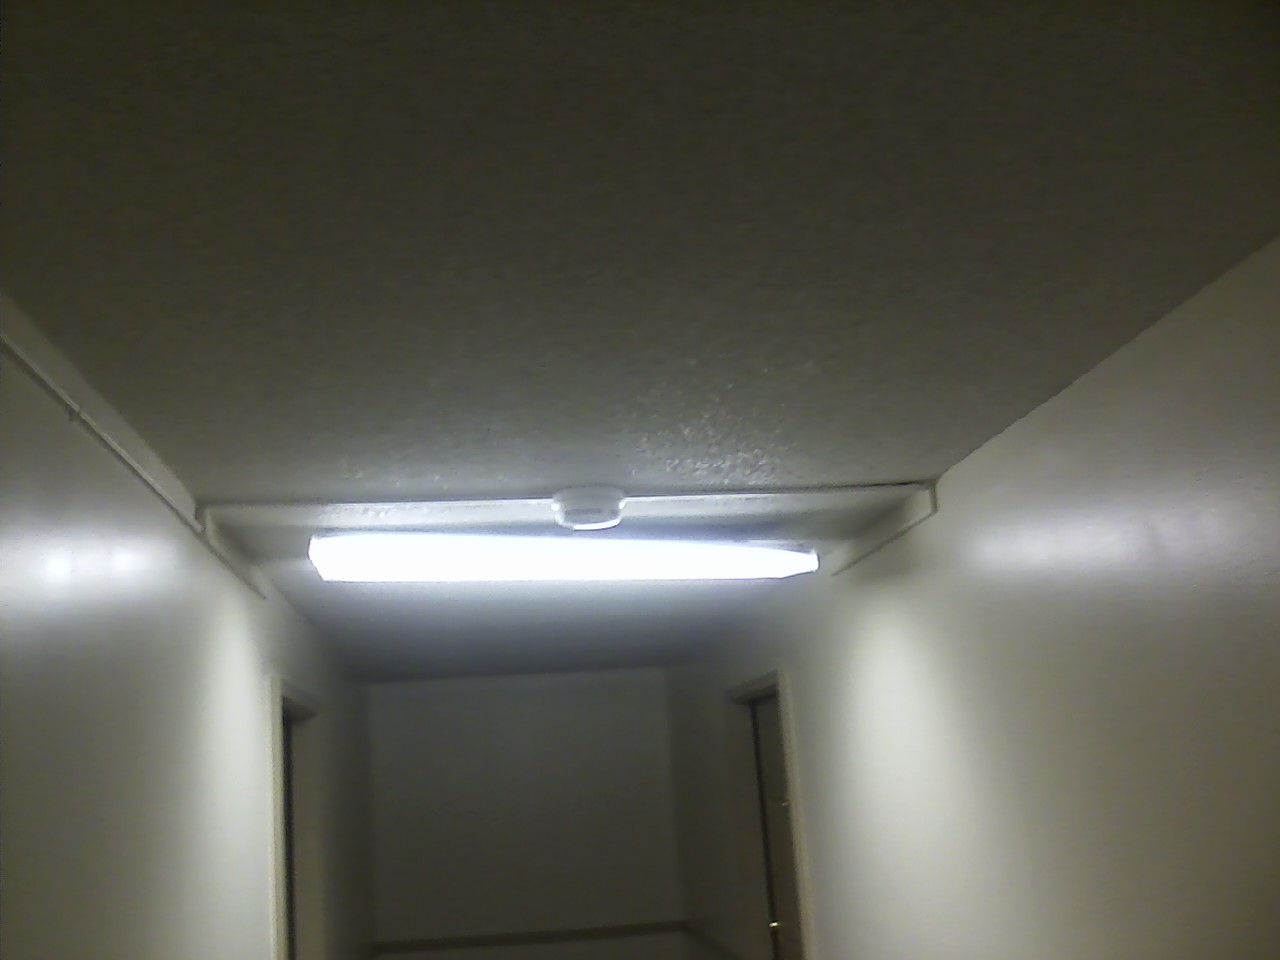 Broken light fixtures in the hallways.